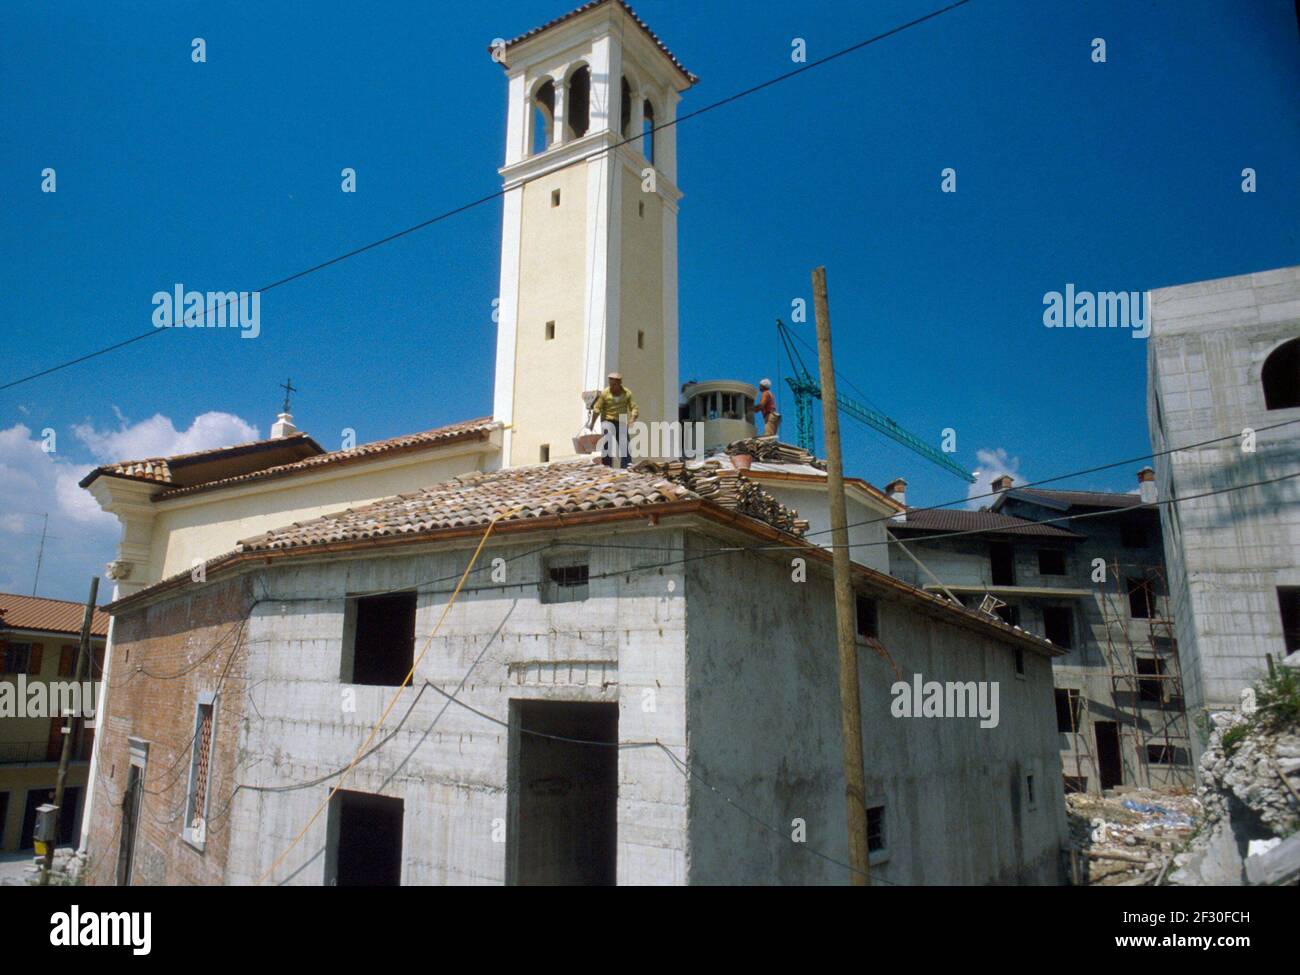 Febbraio 1980, ricostruzione in Friuli (Nord Italia) dopo il terremoto del maggio 1976 Foto Stock